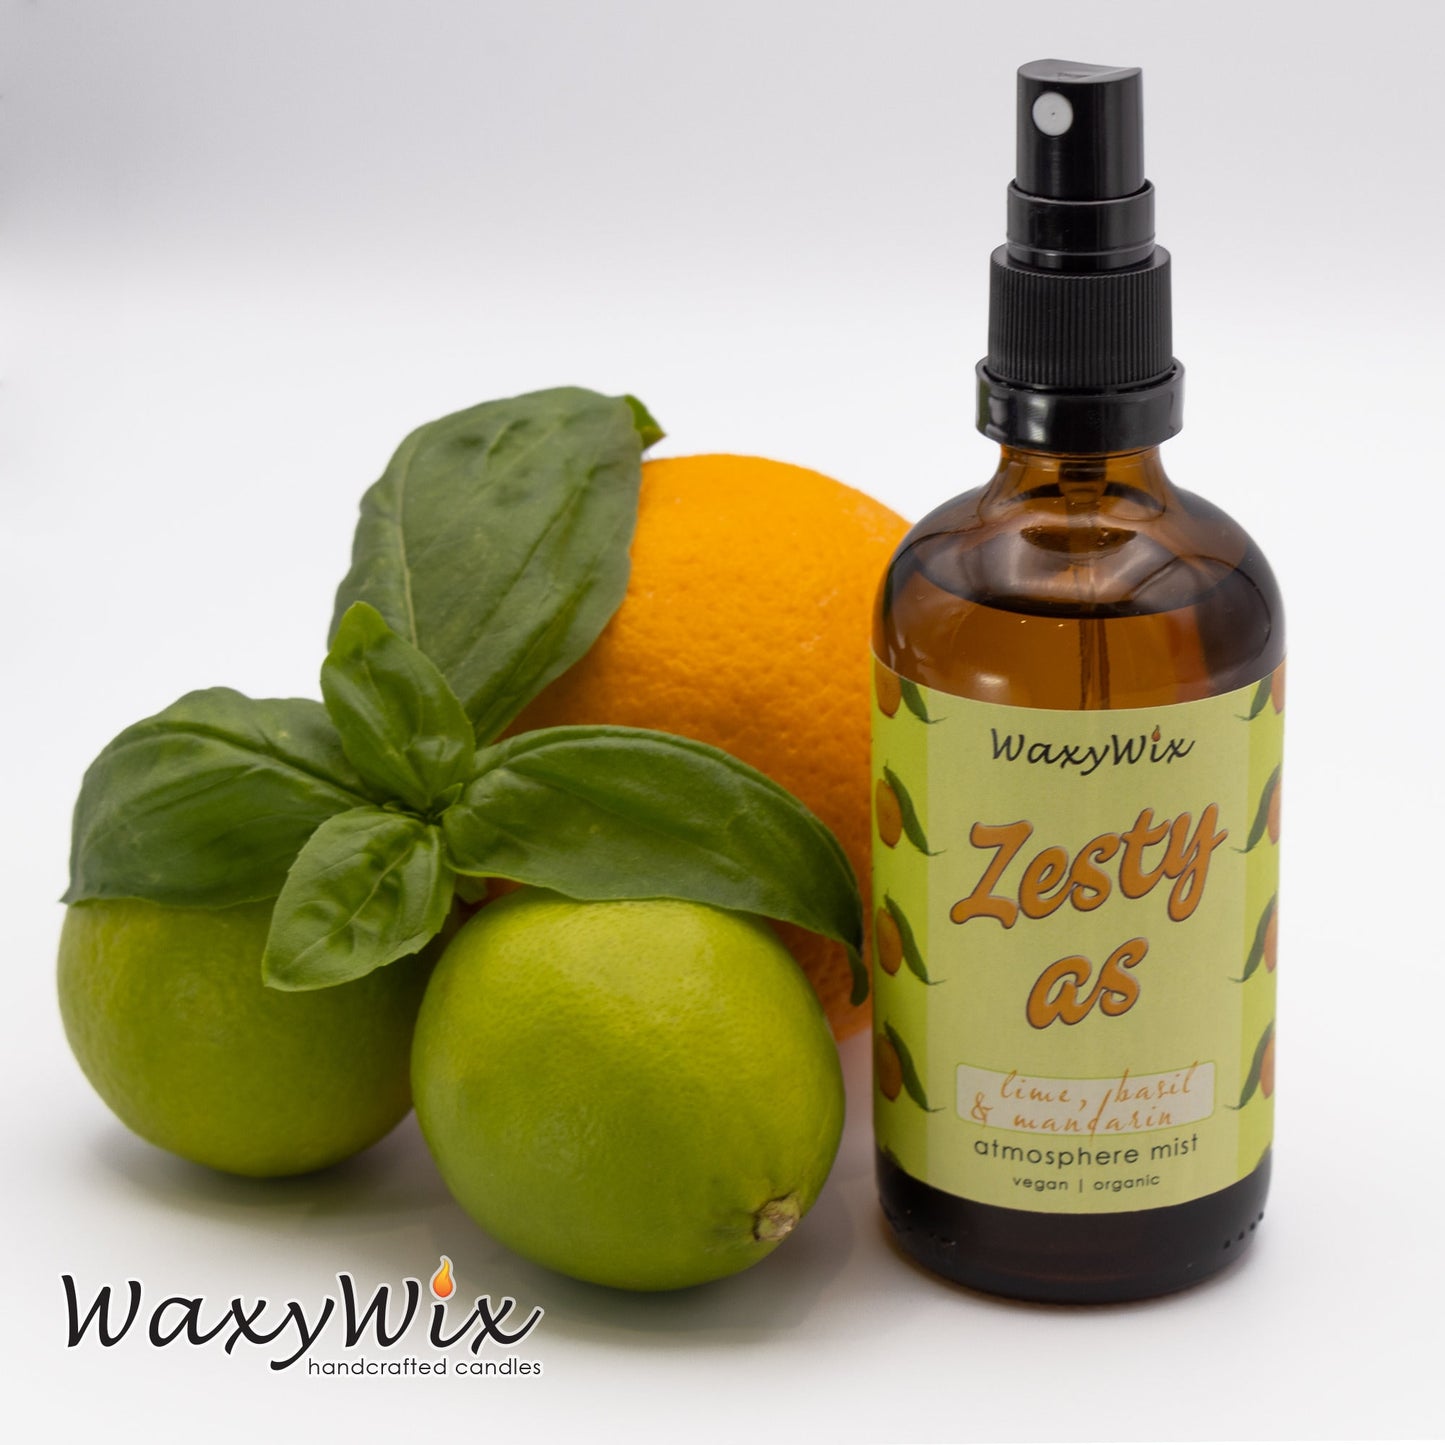 Zesty AS Lime, basil & mandarin room spray